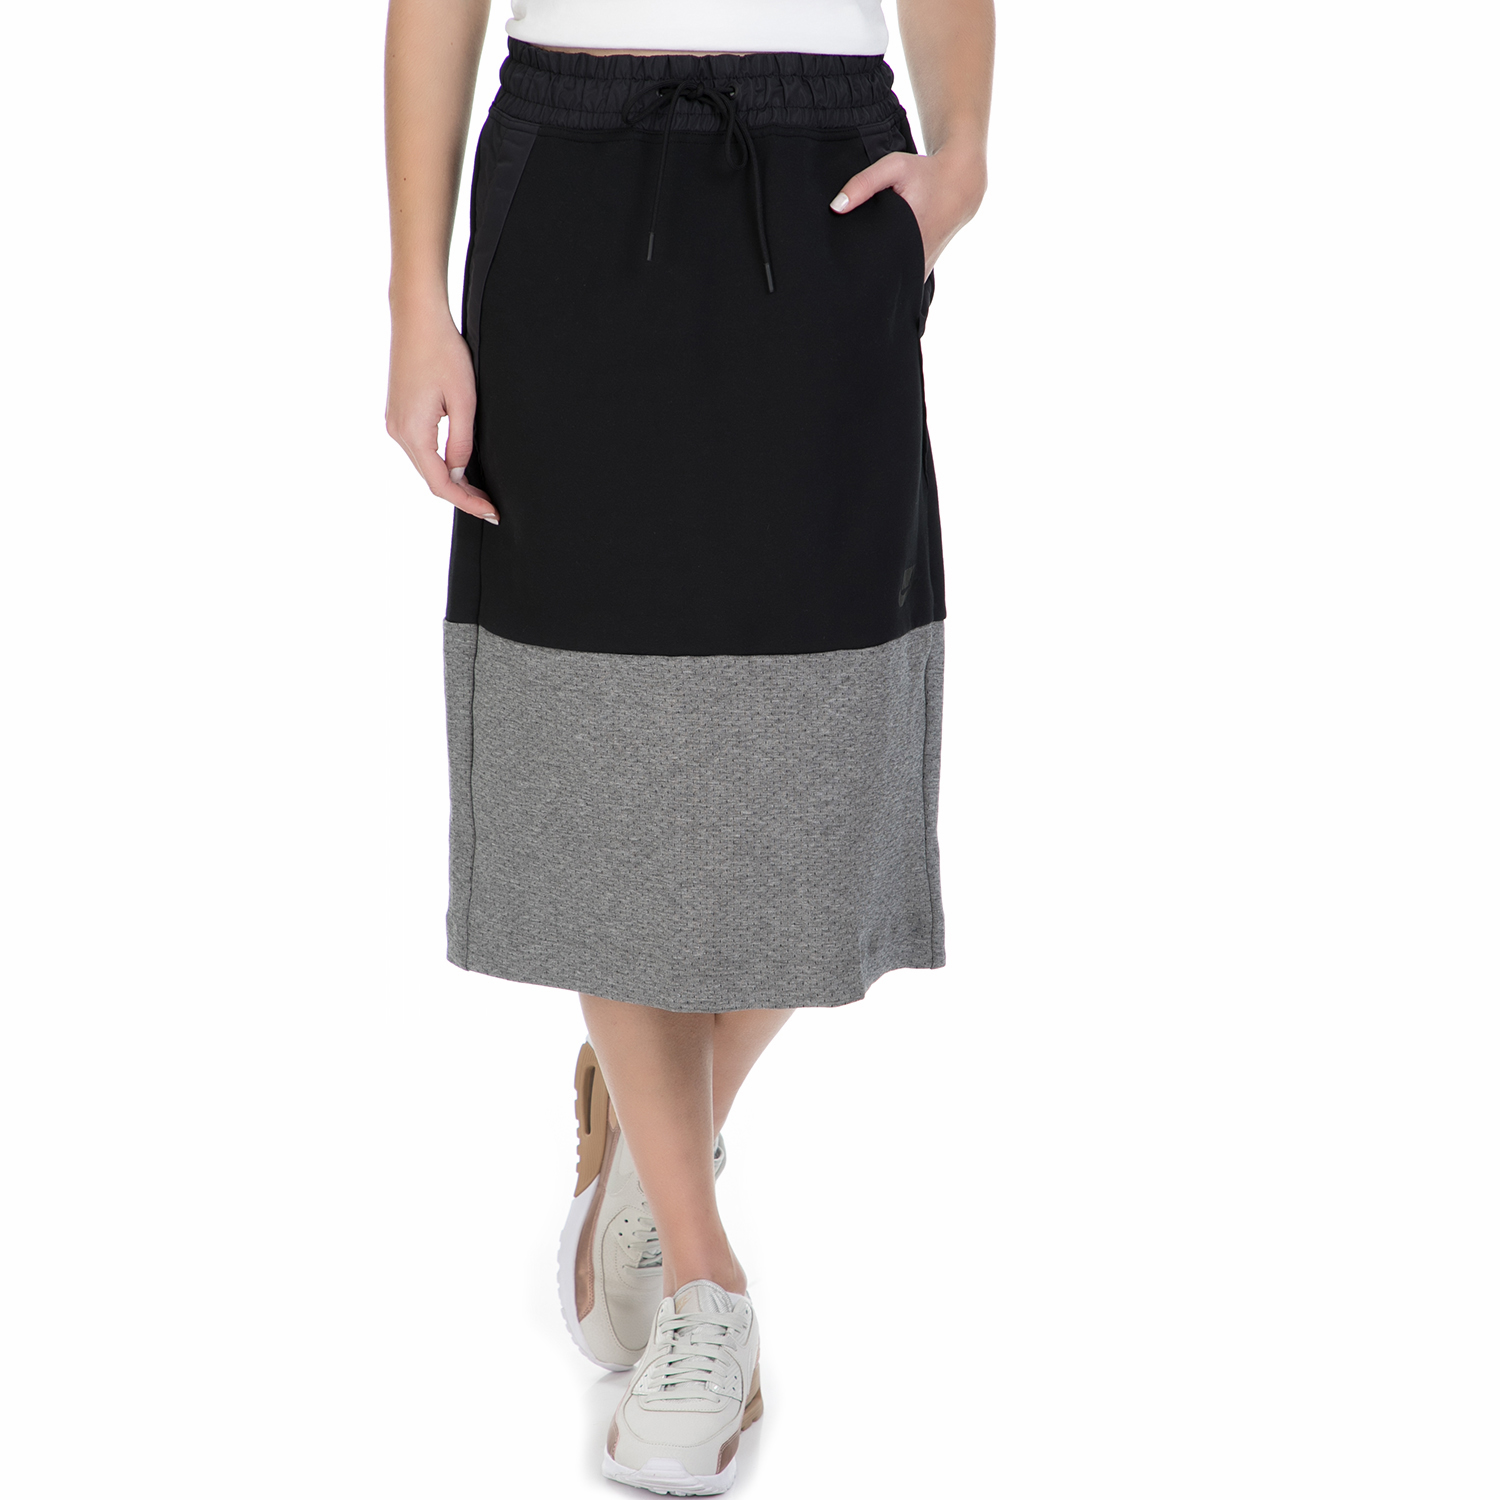 Γυναικεία/Ρούχα/Φούστες/Μέχρι το γόνατο NIKE - Γυναικεία midi φούστα Nike Sportswear Tech Fleece μαύρη - γκρι